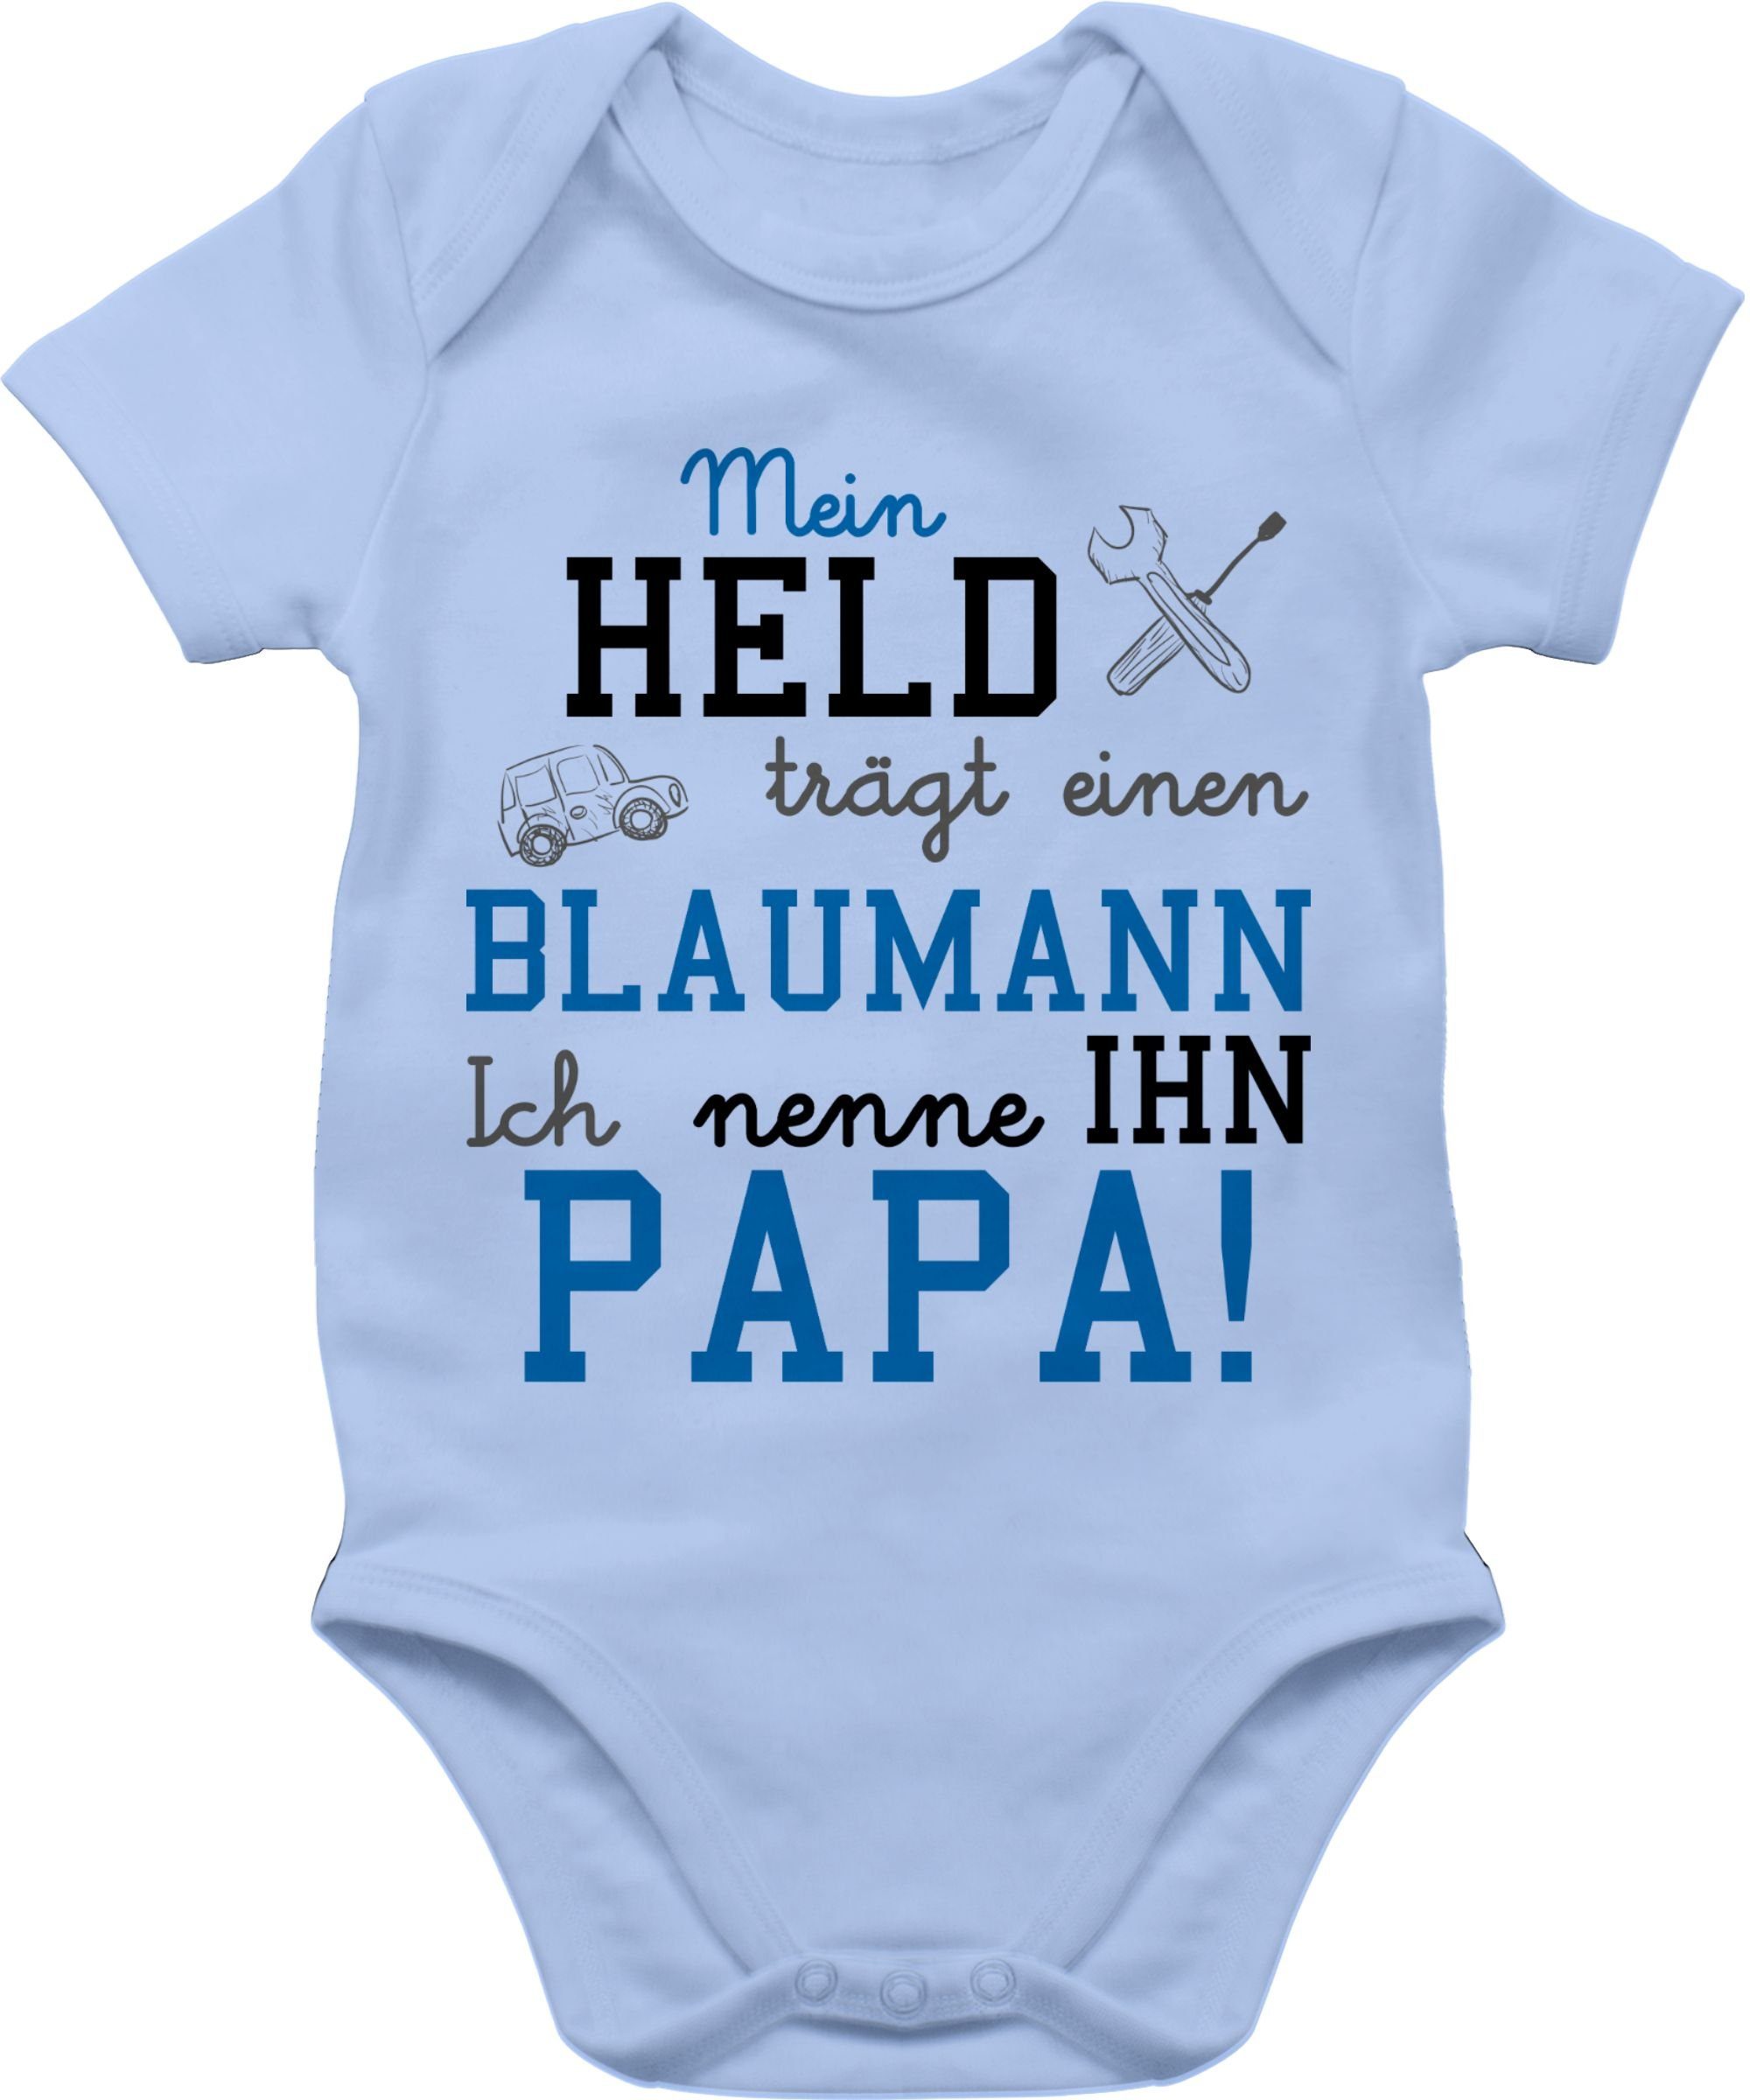 Baby Shirtracer Babyblau Sprüche Held einen Mein trägt Shirtbody Blaumann 2